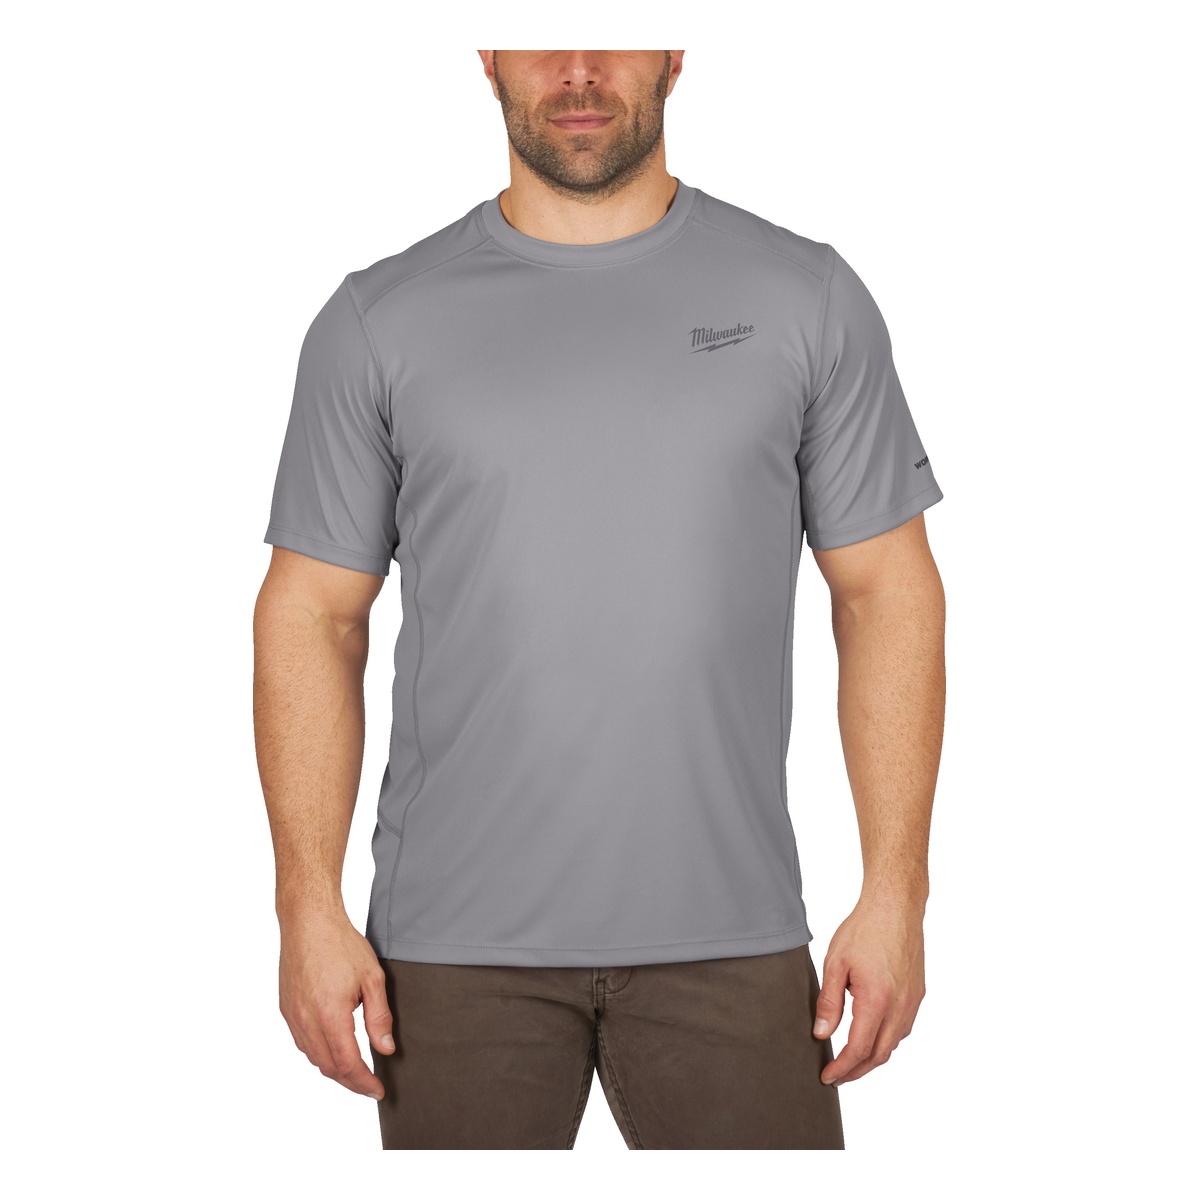 Milwaukee Funktions-T-Shirt grau mit UV-Schutz WWSSG-XL - 1 Stk.